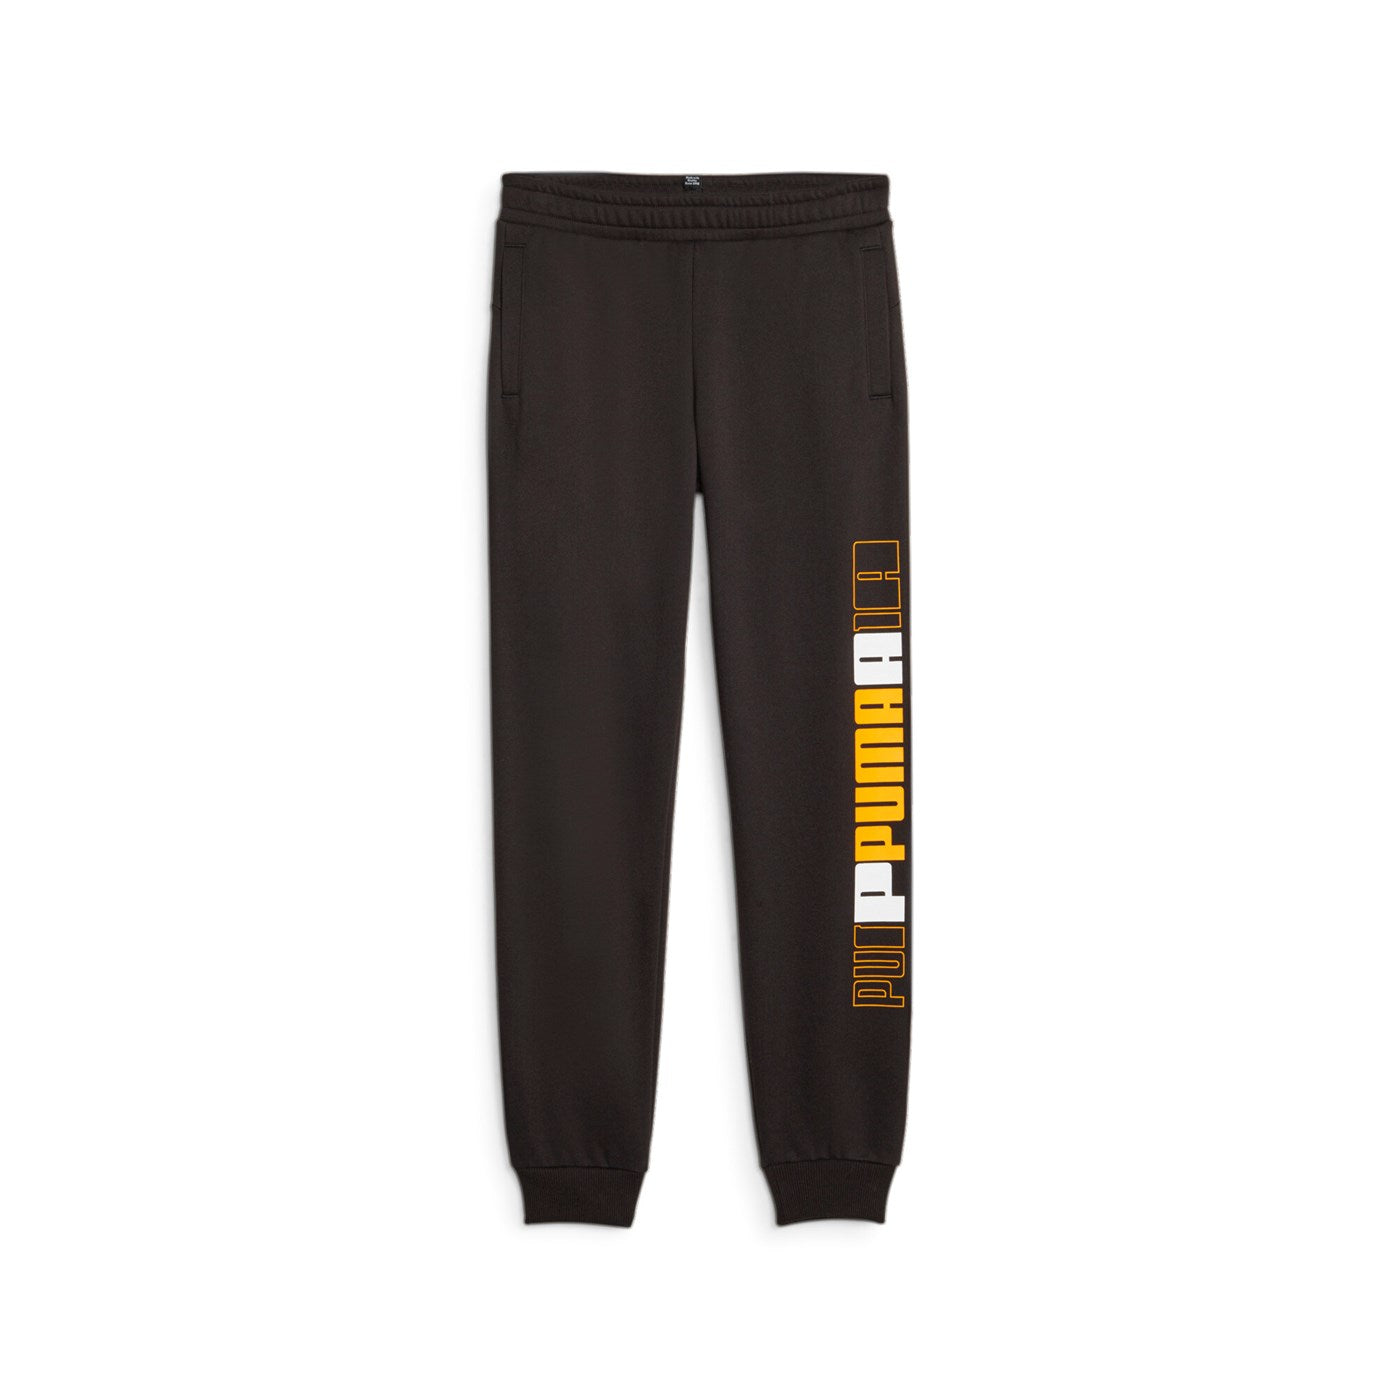 Puma pantalone sportivo con stampa sulla gamba da ragazzo Logo Lab 676326-51 nero-giallo